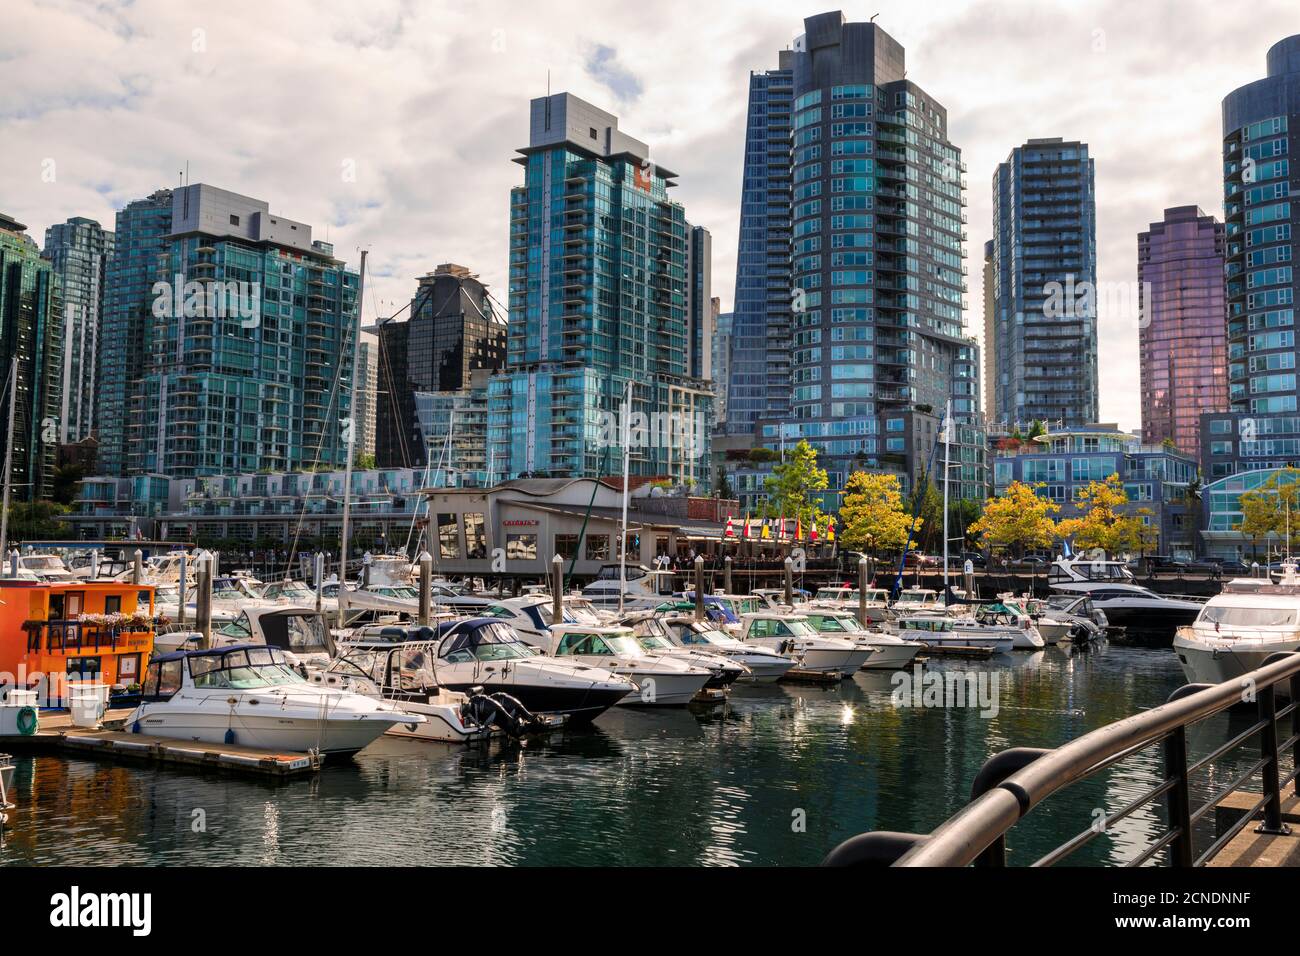 Marina à Coal Harbour, avec bateaux de plaisance et bateaux de plaisance, vue sur la ville, Vancouver (Colombie-Britannique), Canada Banque D'Images